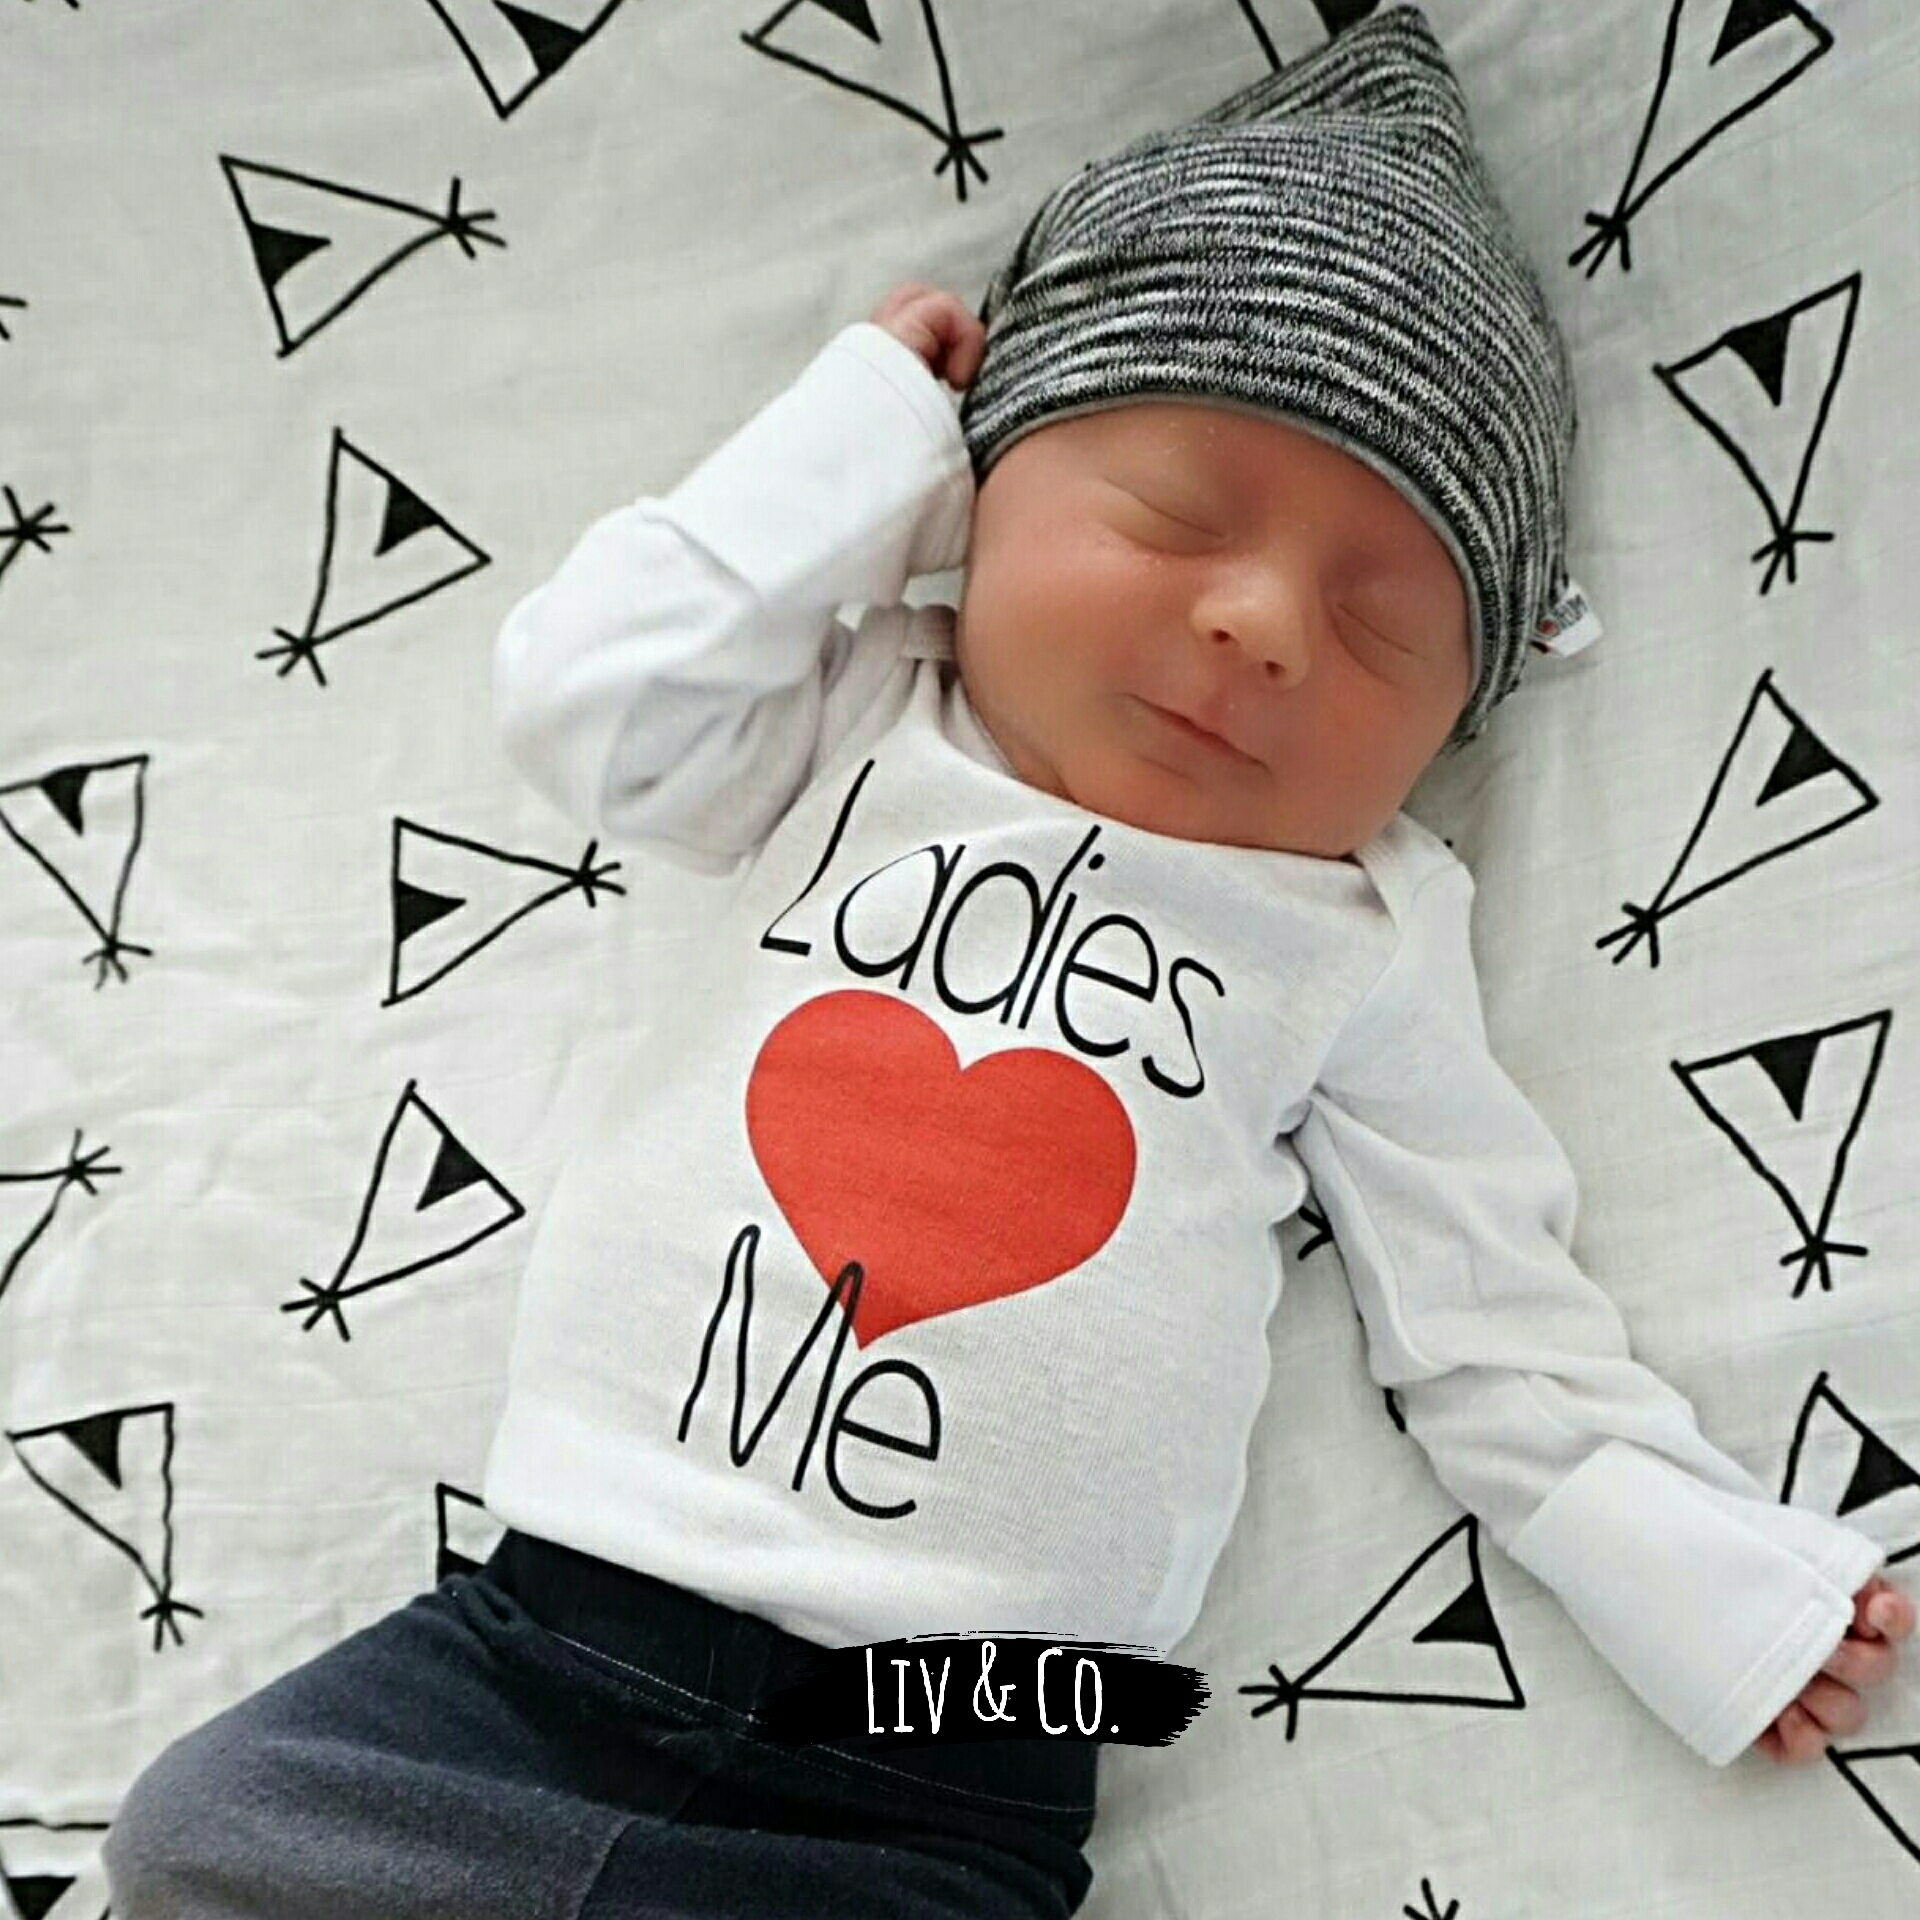 Valentine Shirt - Valentines Day Shirt - Valentine Boy Shirt - Baby Boy Valentine Outfit - Baby Boy Valentine Shirt - Boy Valentines Day